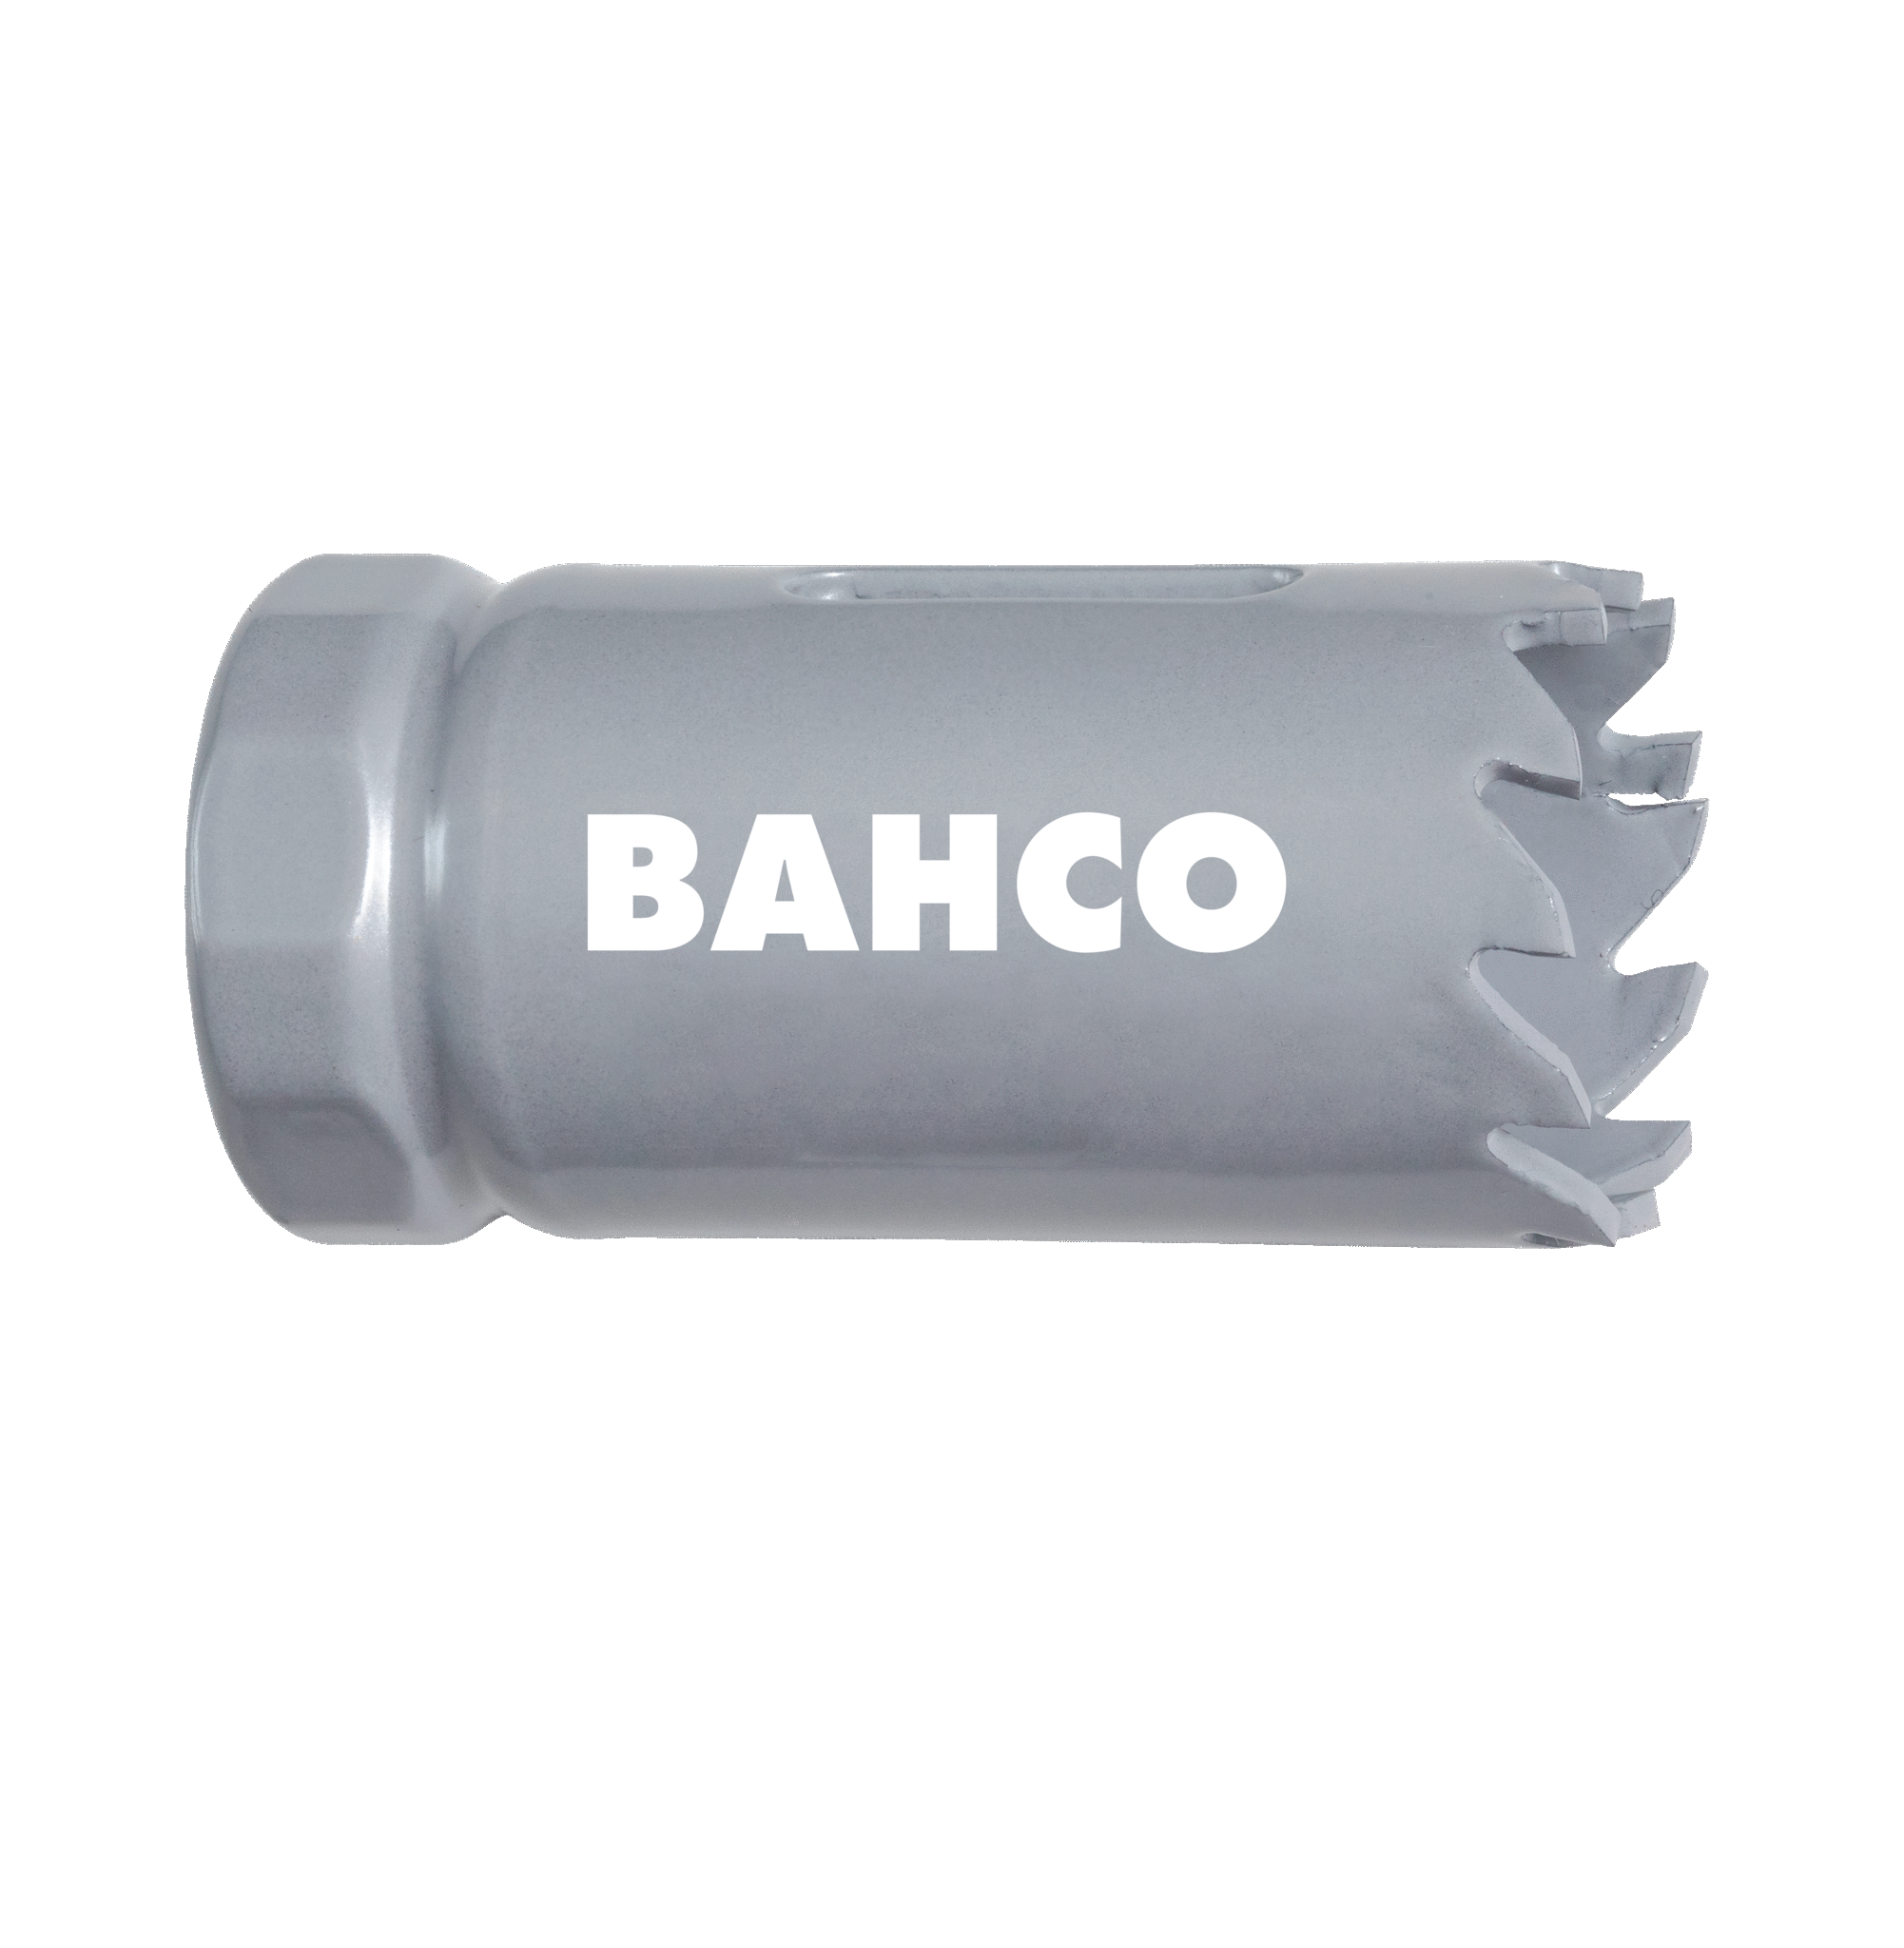 Кольцевые пилы с твердосплавными напайками BAHCO 3832-29